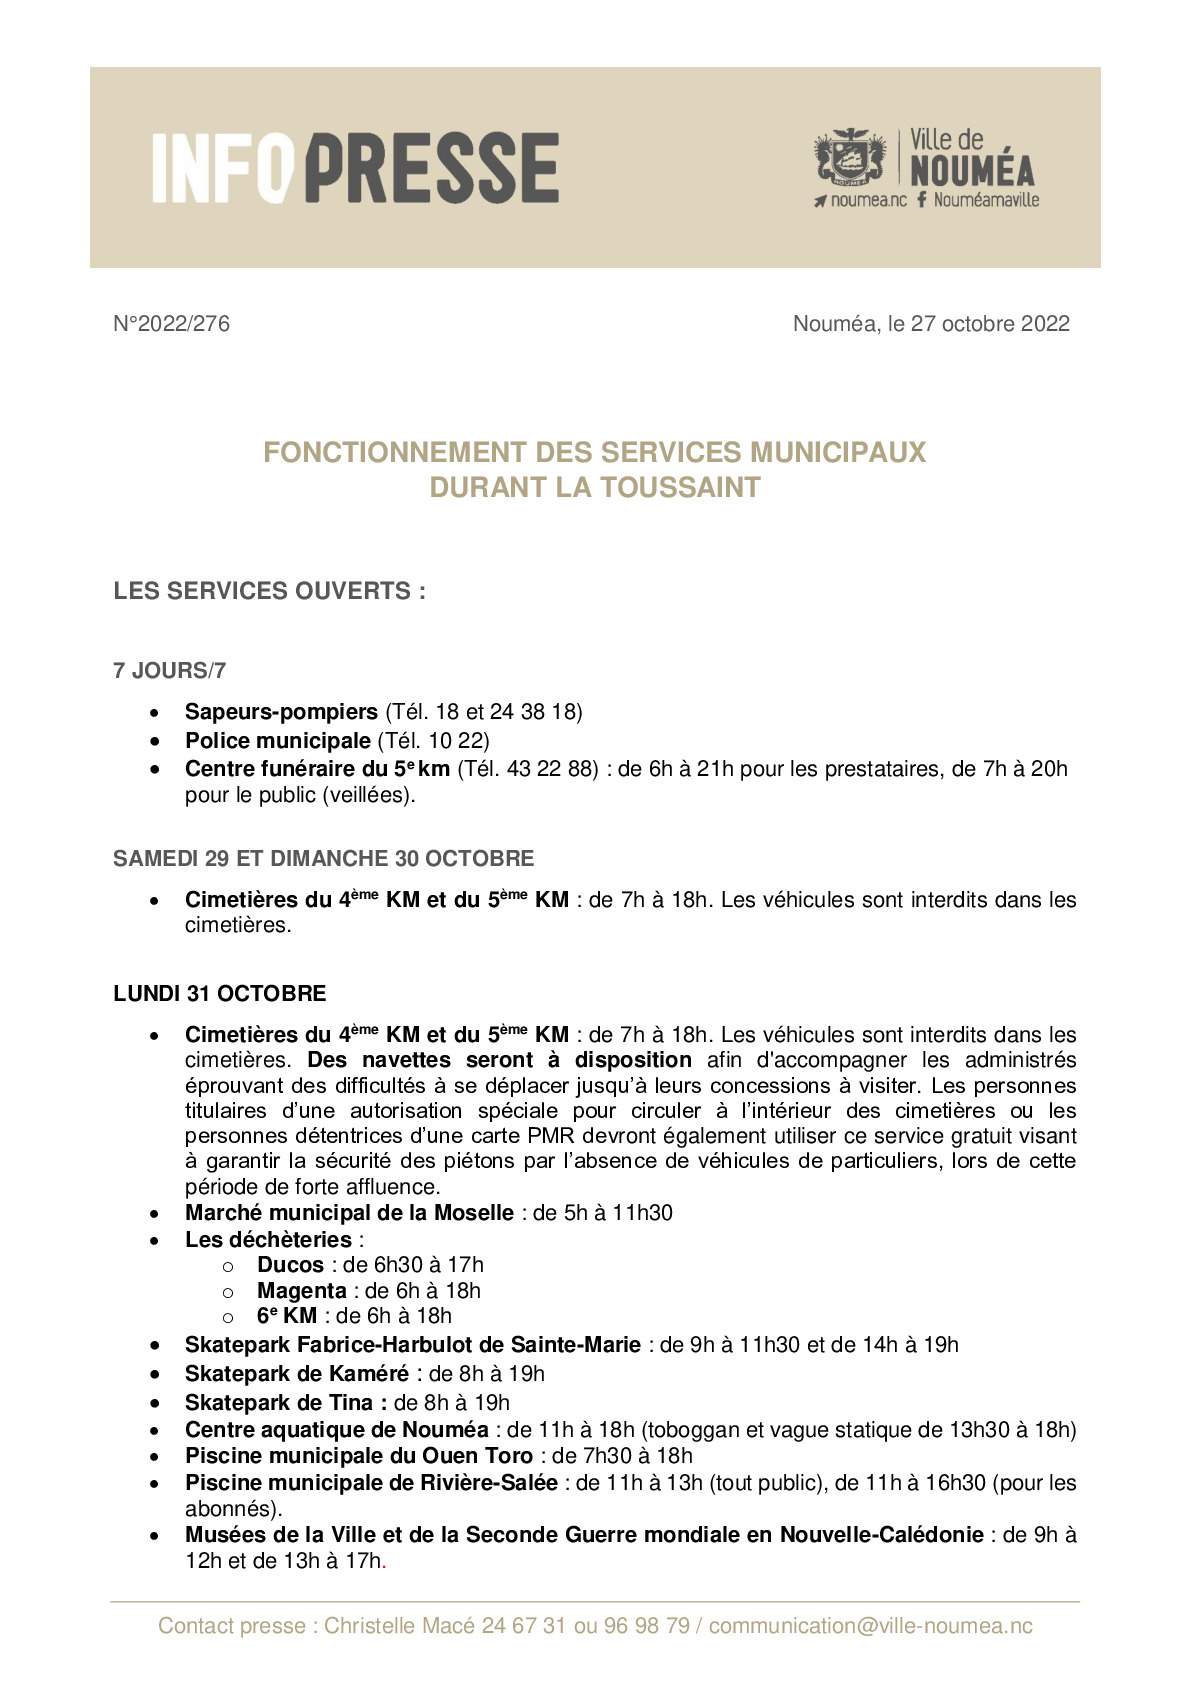 IP 276 Fonctionnement des services Toussaint.pdf